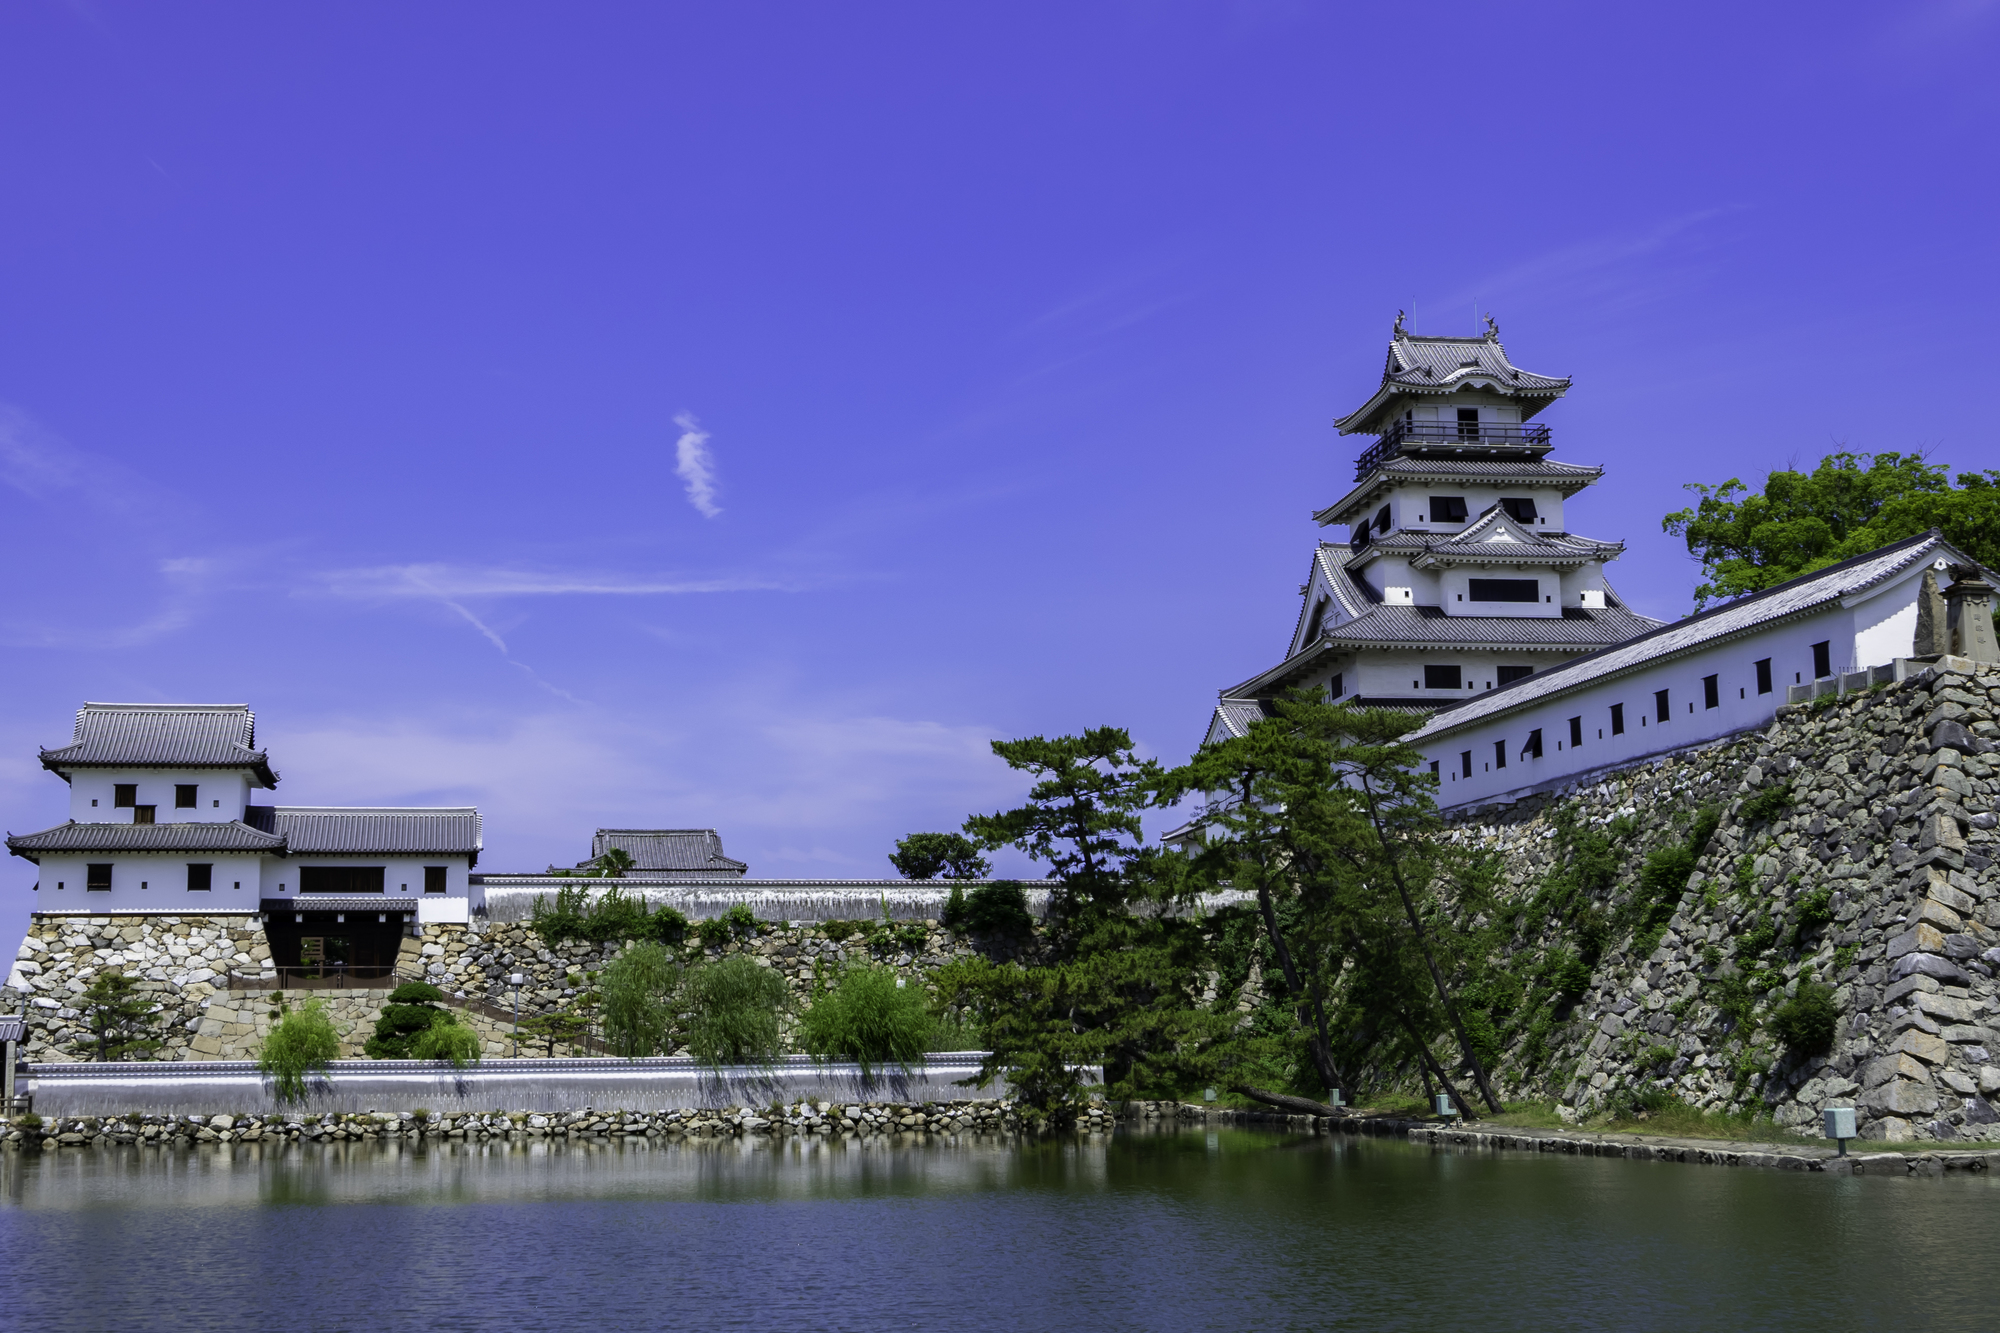 「日本三大海城」のひとつ、今治城。堀には瀬戸内海の魚が泳ぎます（イメージ）